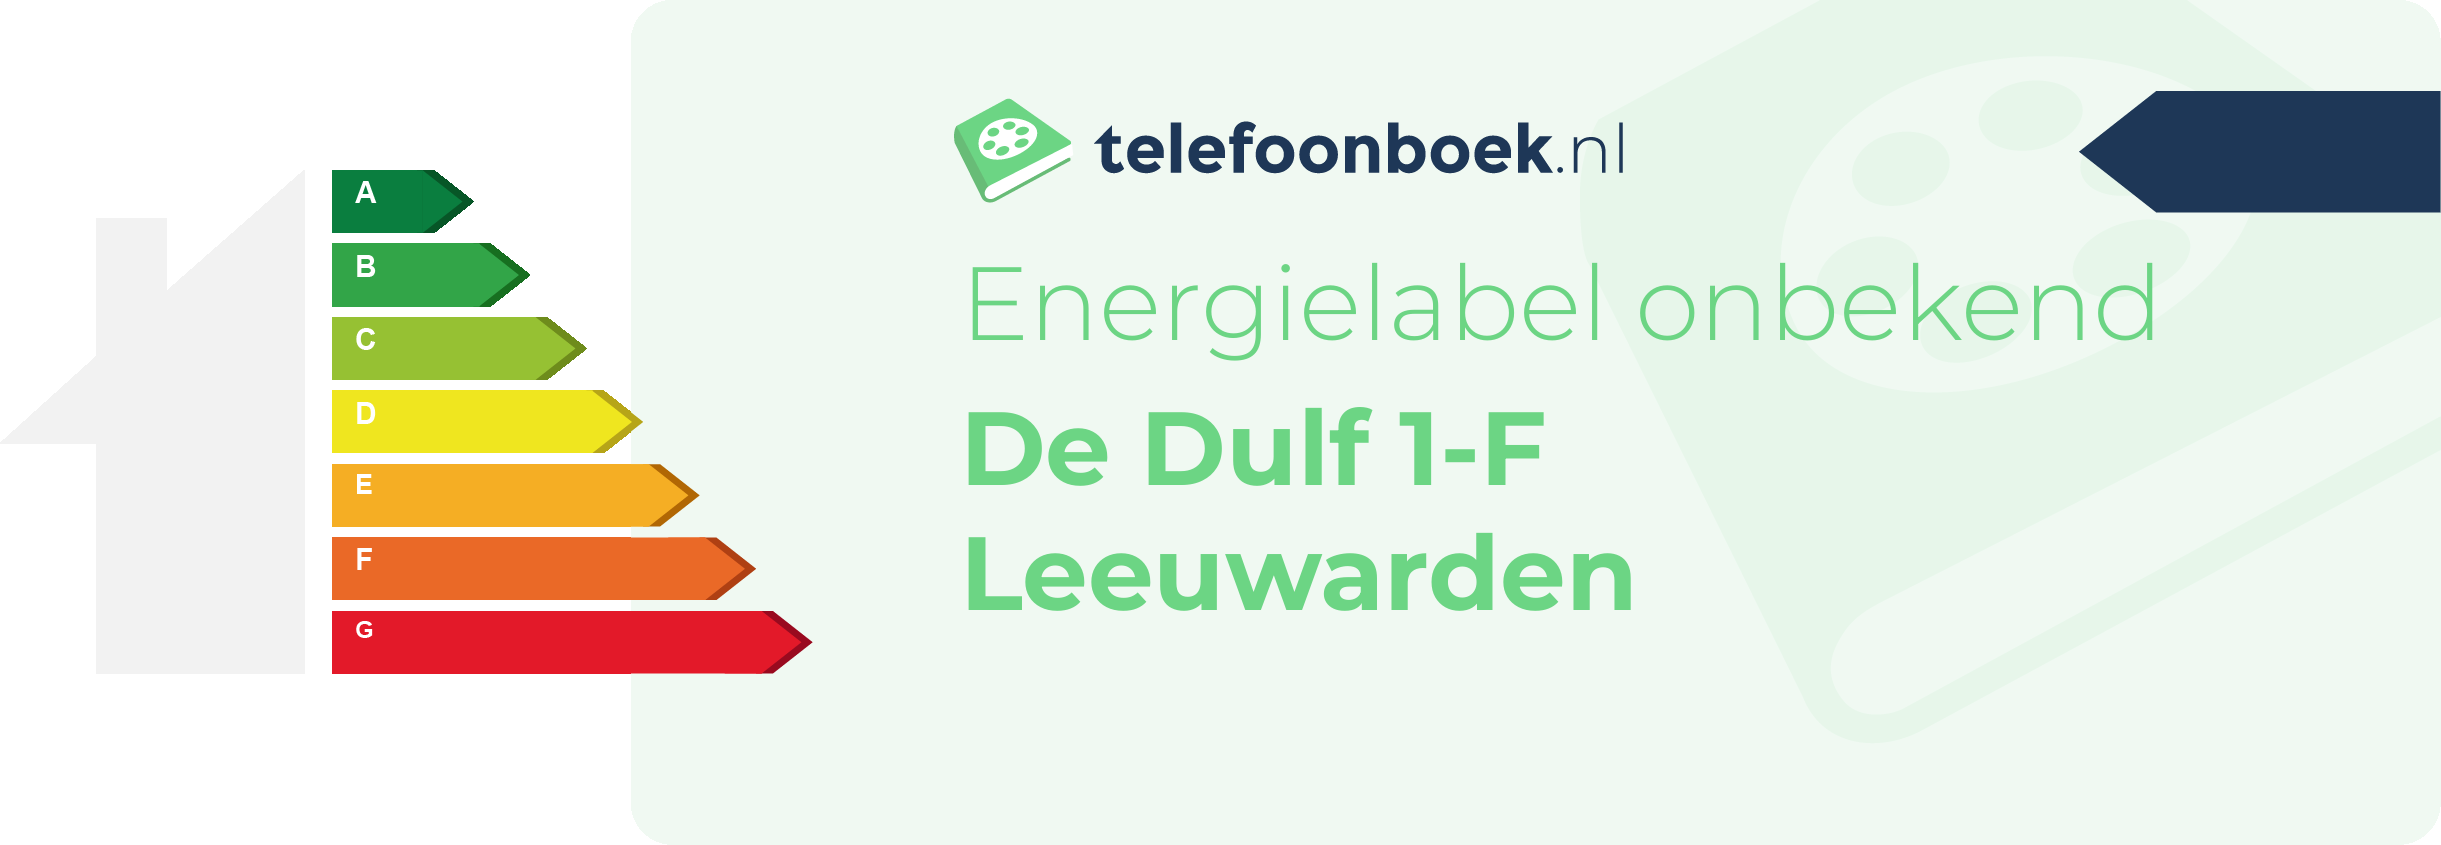 Energielabel De Dulf 1-F Leeuwarden